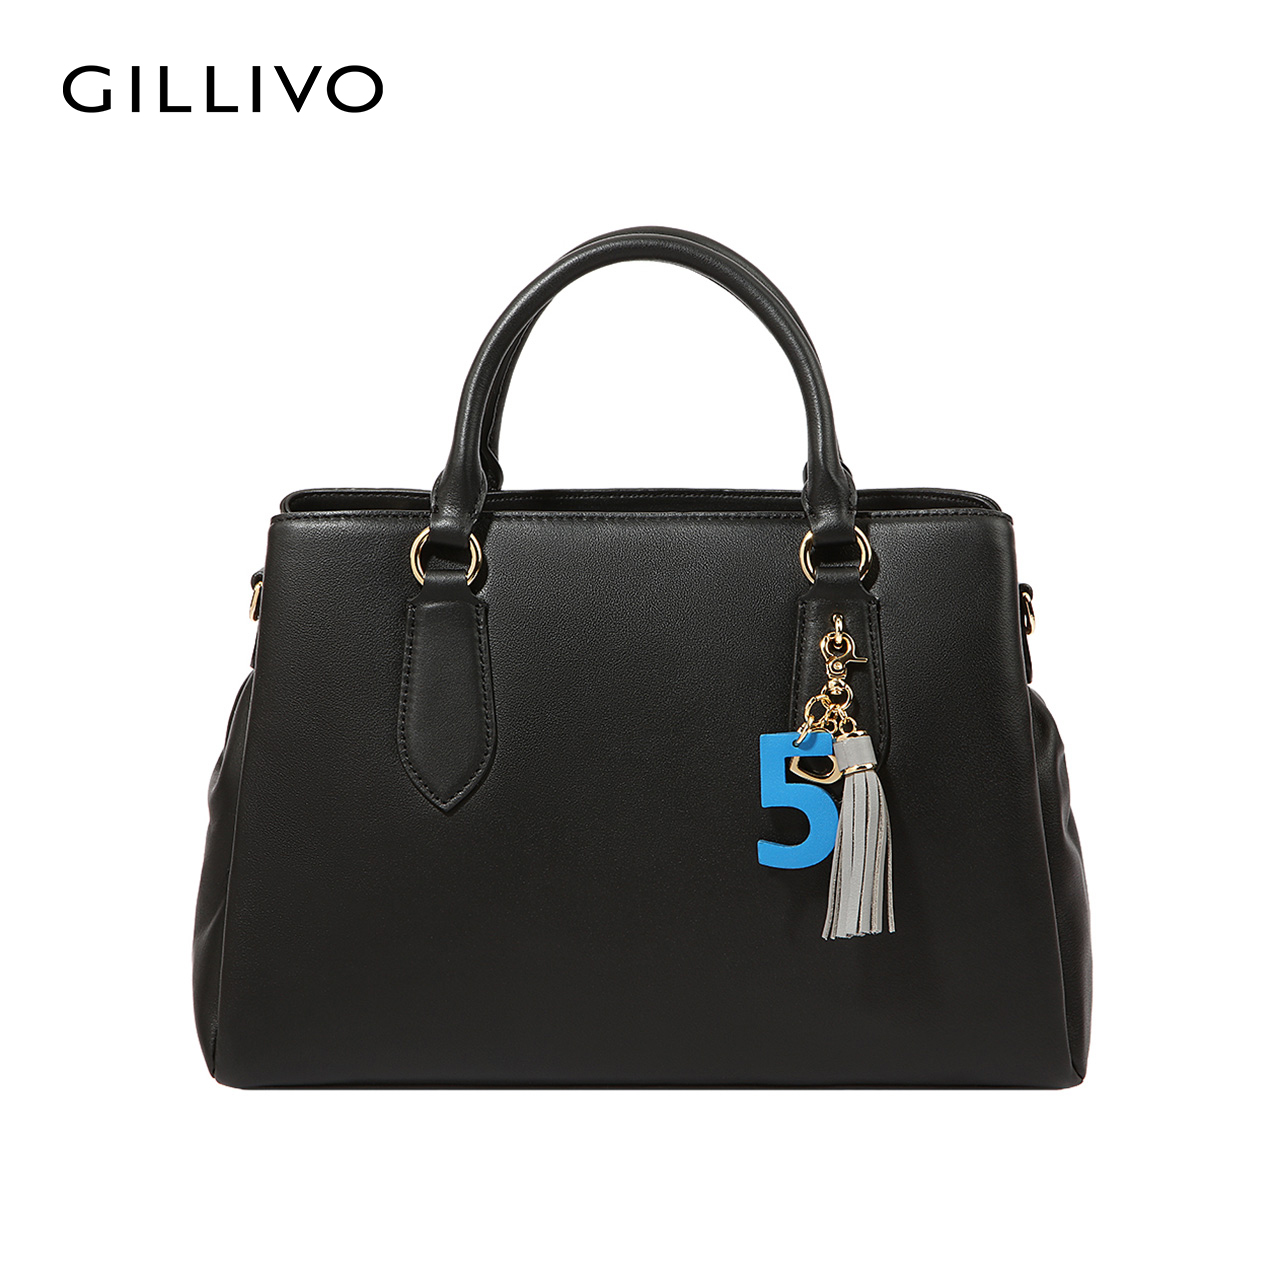 GILLIVO/嘉里奥2019新款女包包 真皮单肩斜跨包 时尚手提电脑包